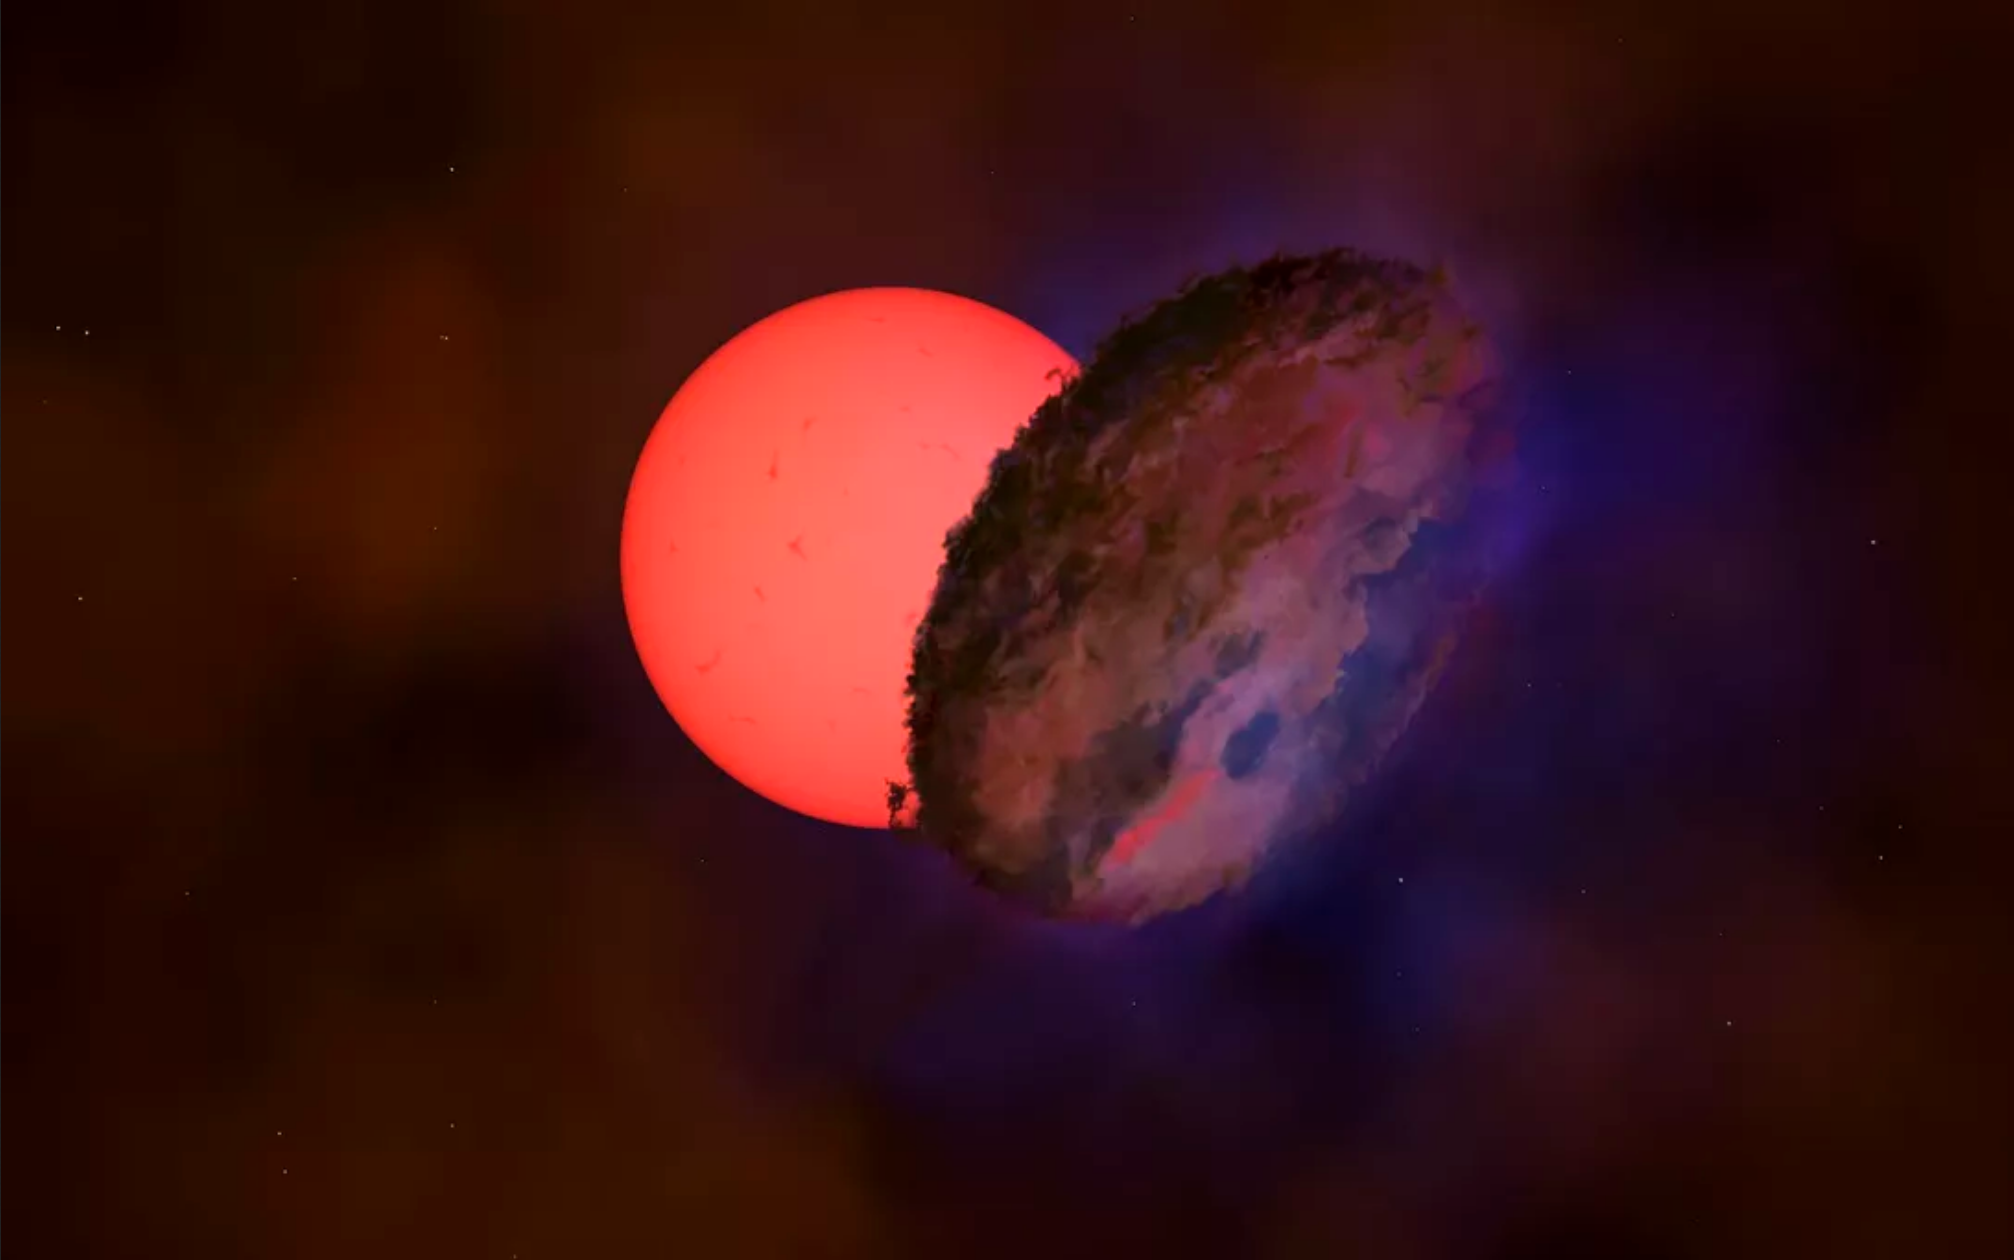 天文学家在超过25000光年外的银河系中心发现一颗巨大的“闪烁”恒星VVV-WIT-08